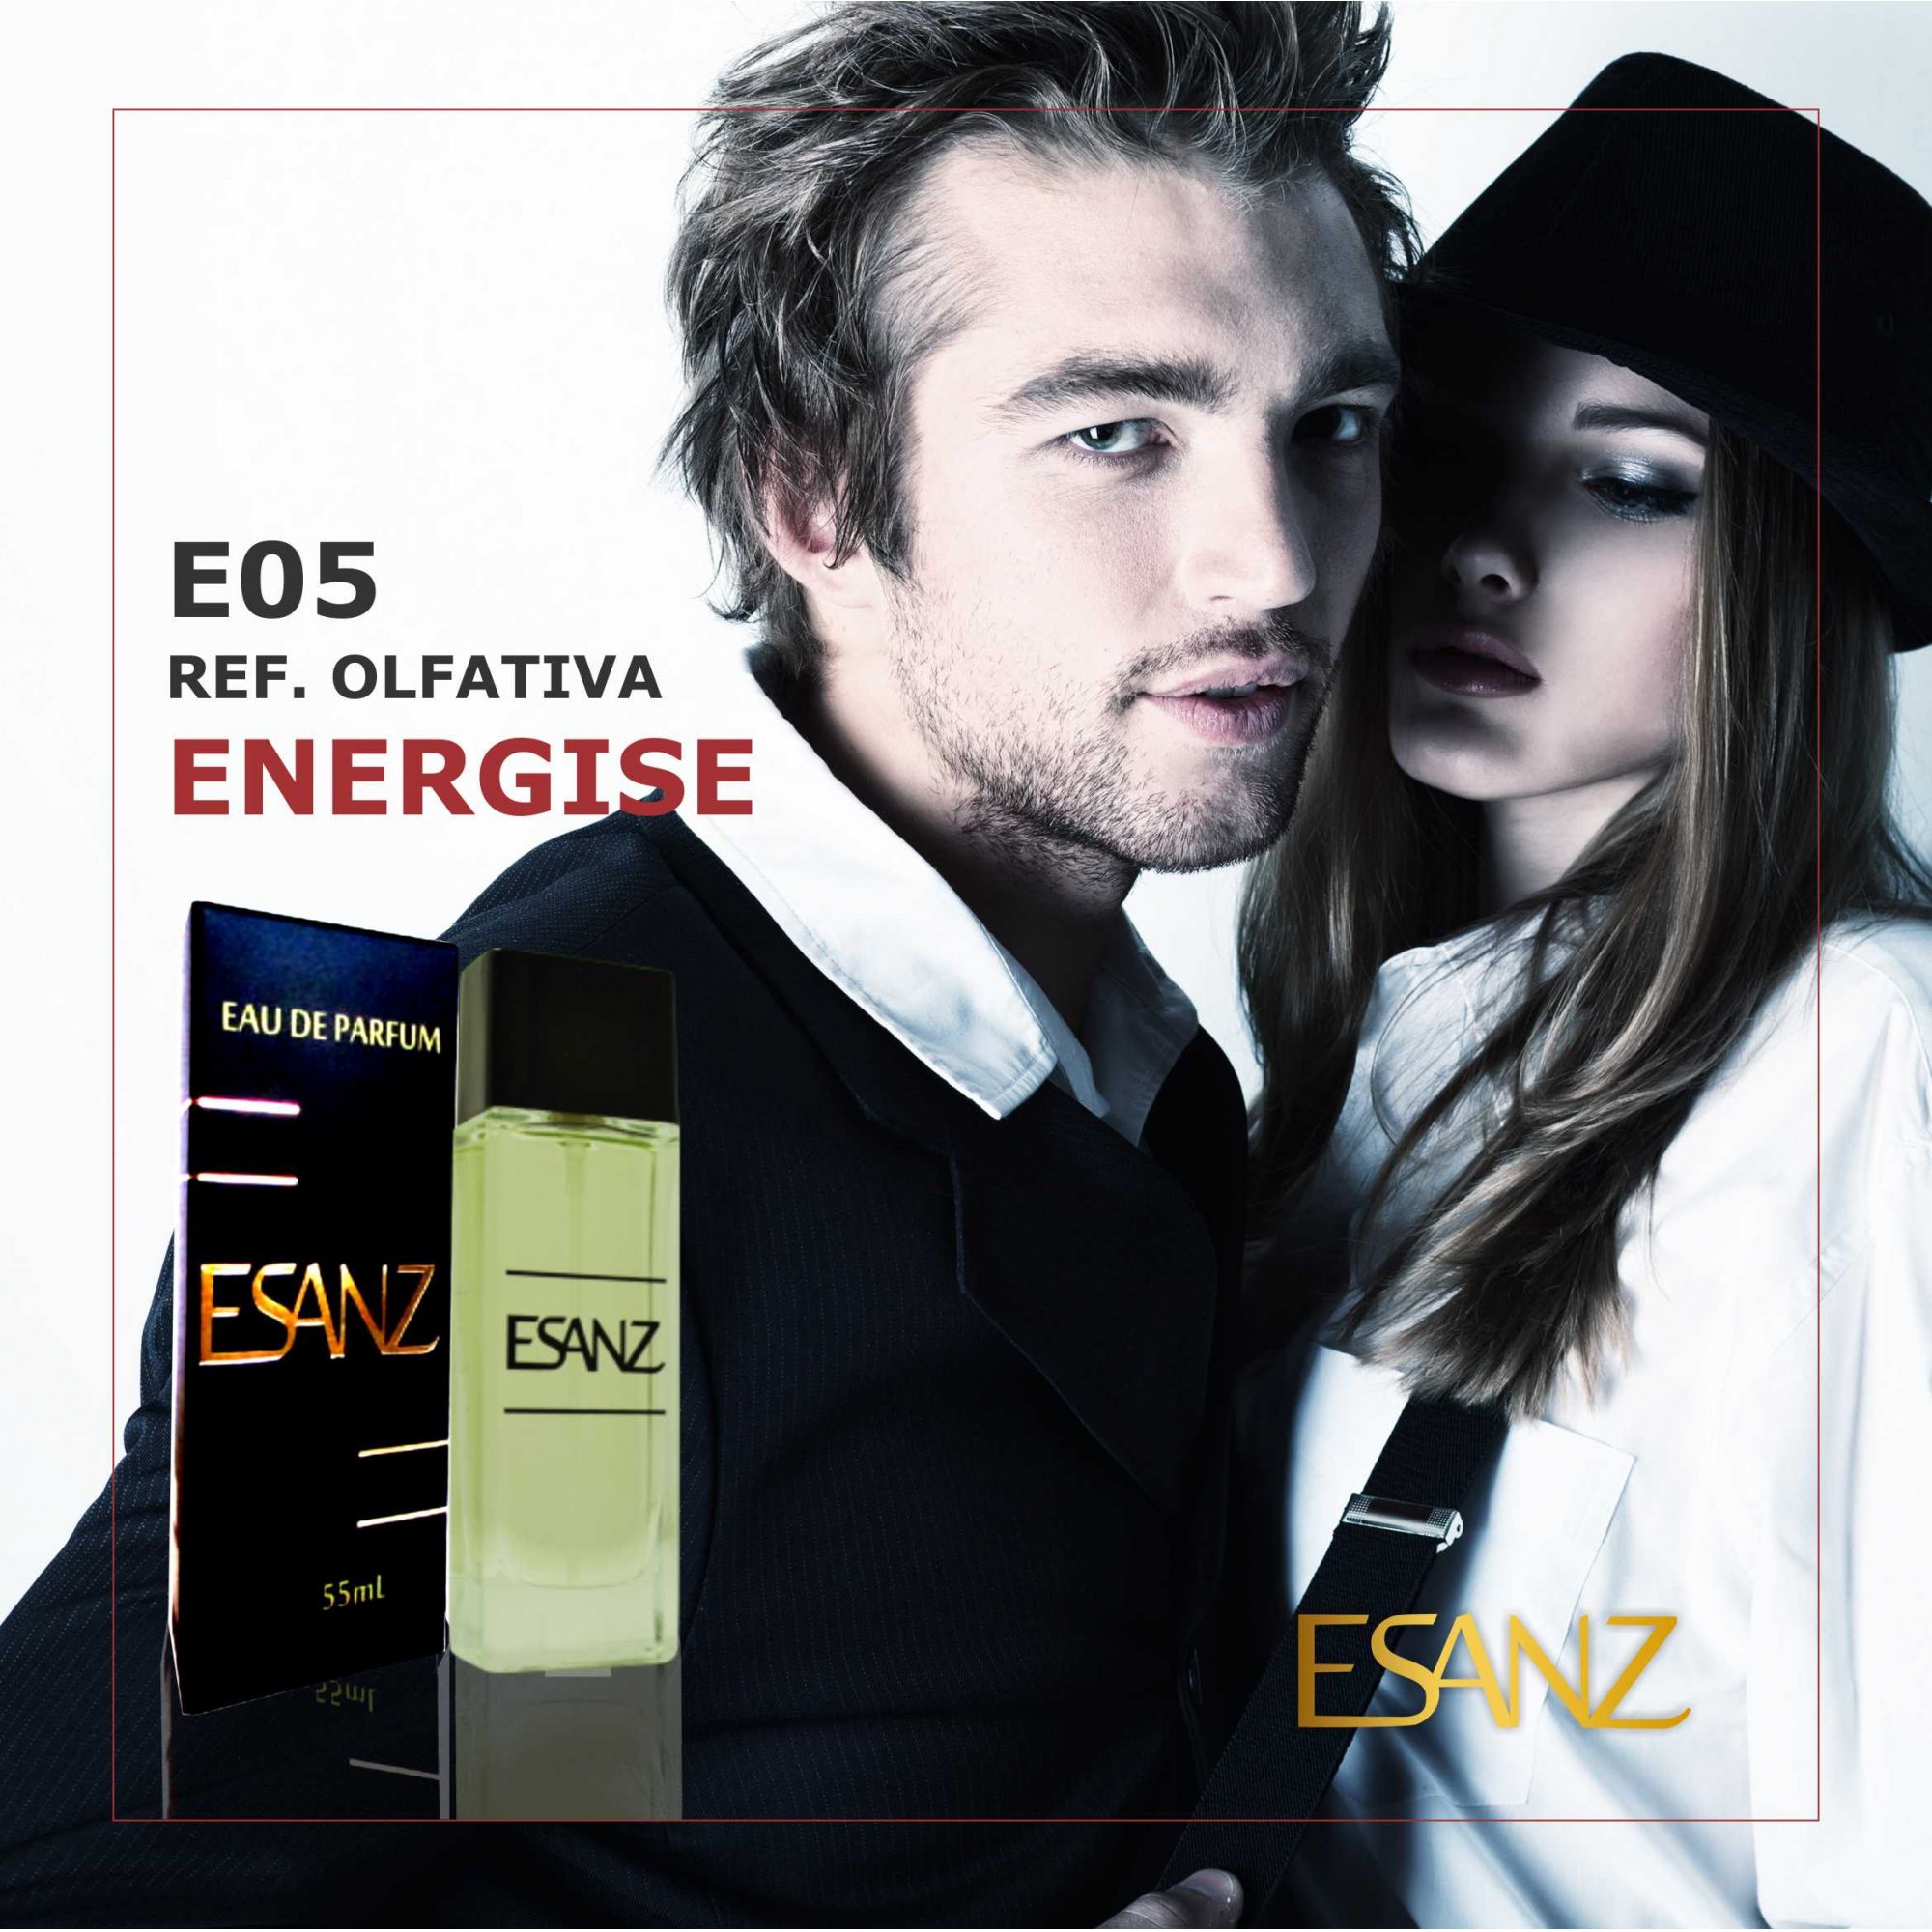 E05 Ref.: Energise - Hugo Boss